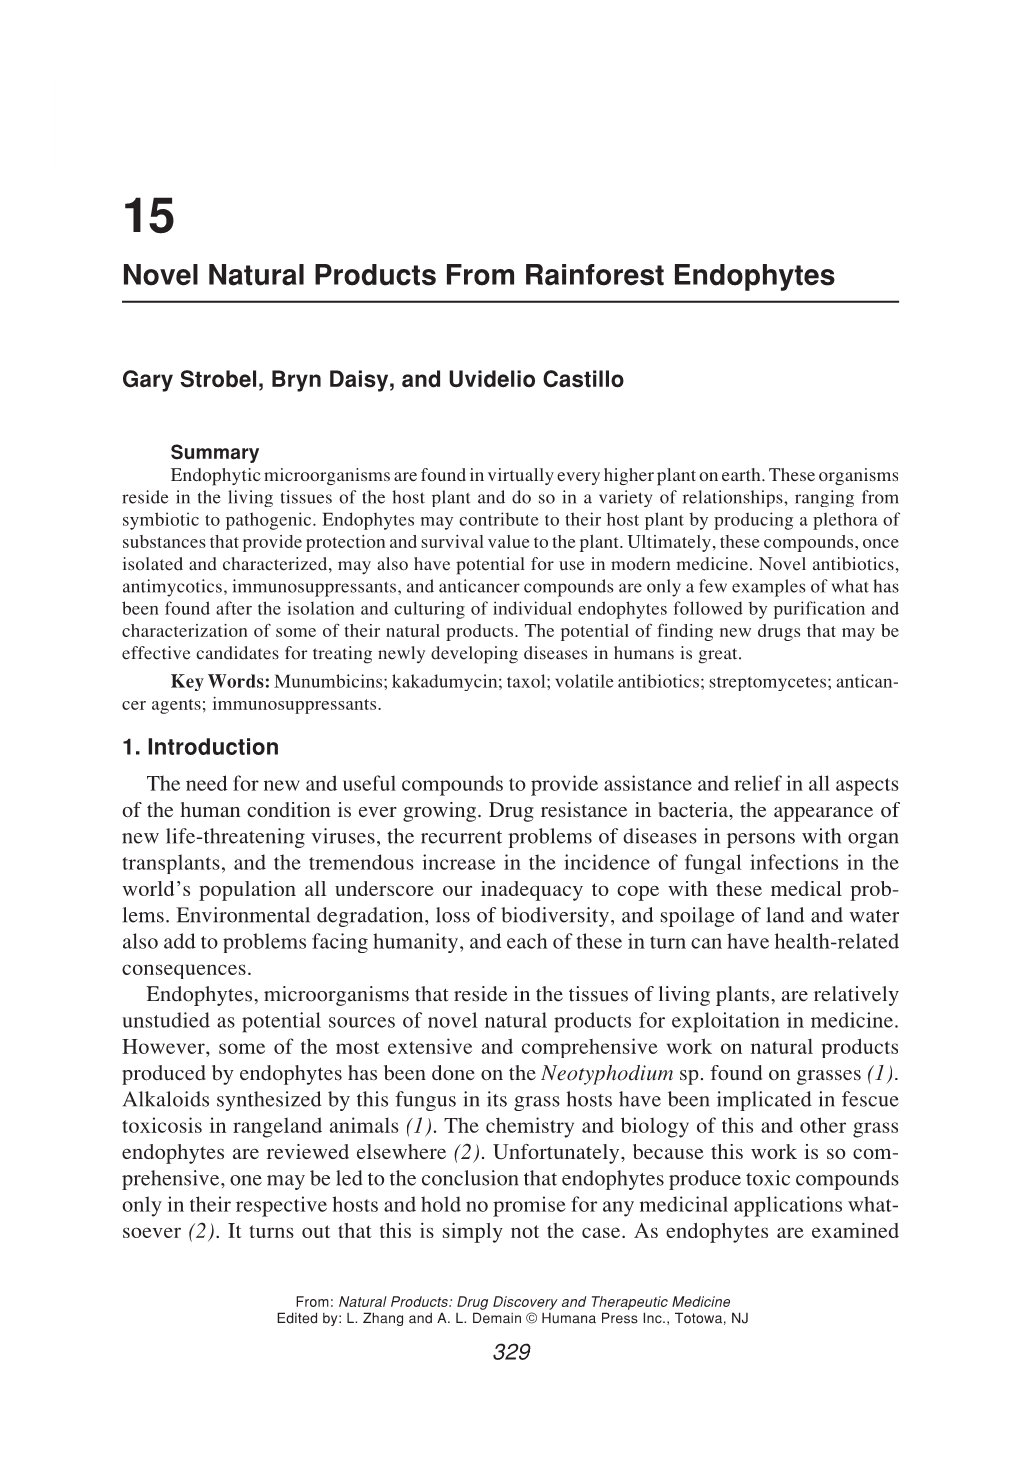 Novel Natural Products from Rainforest Endophytes